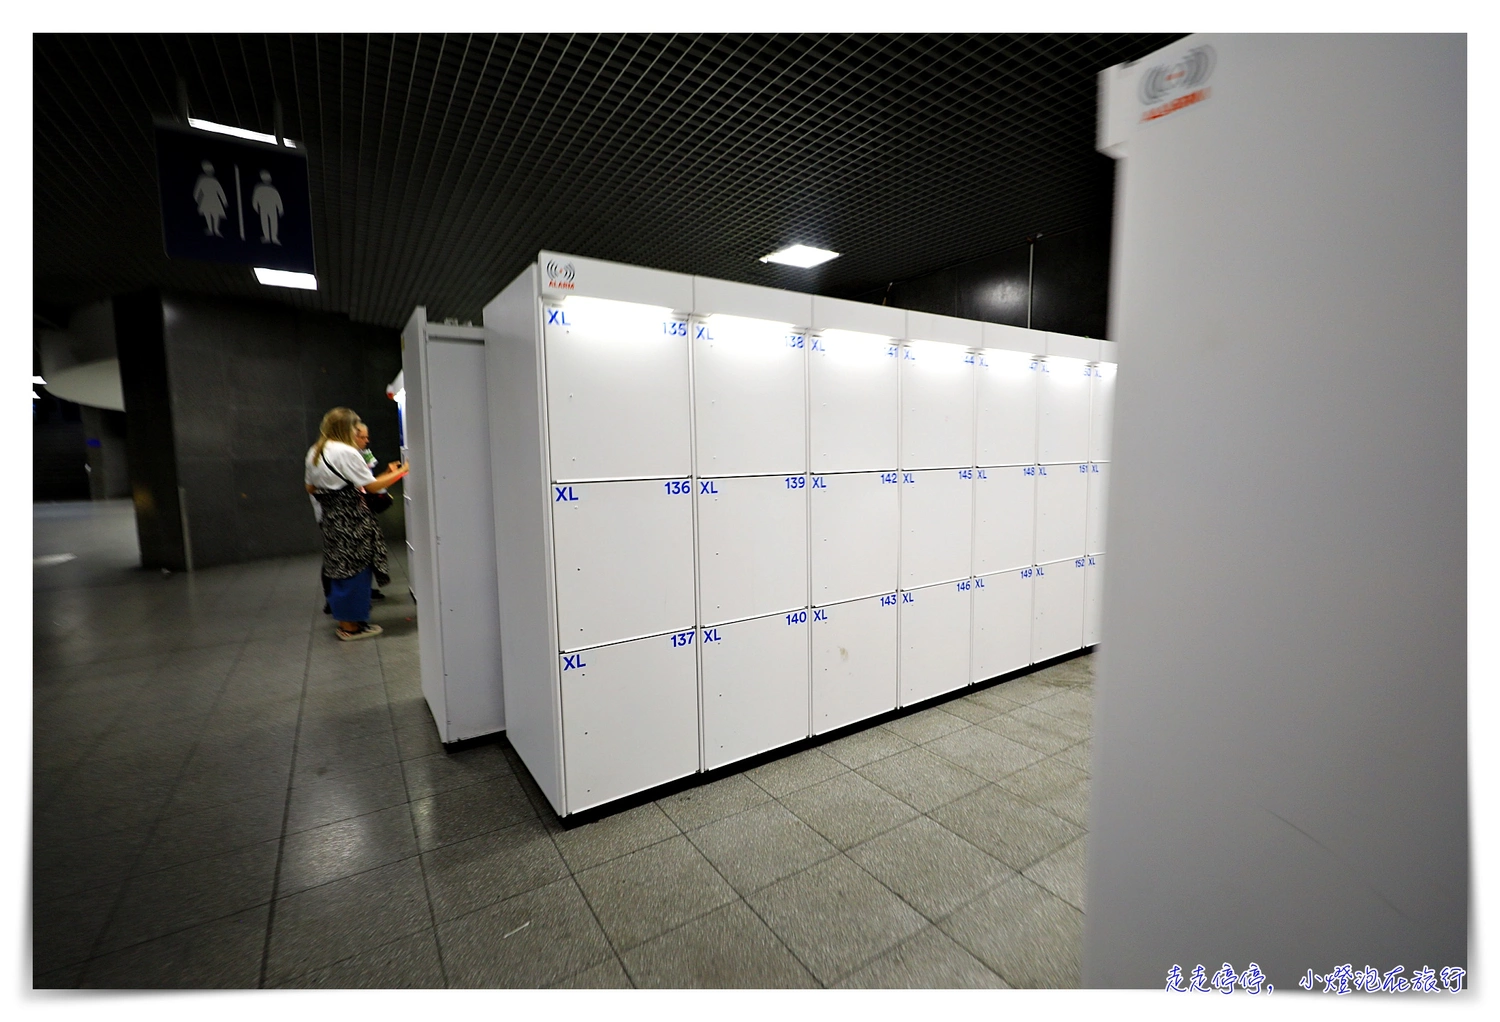 延伸閱讀：布魯塞爾南站行李寄存Brussel-Zuid/Midi｜行李寄存櫃、價格及使用方法